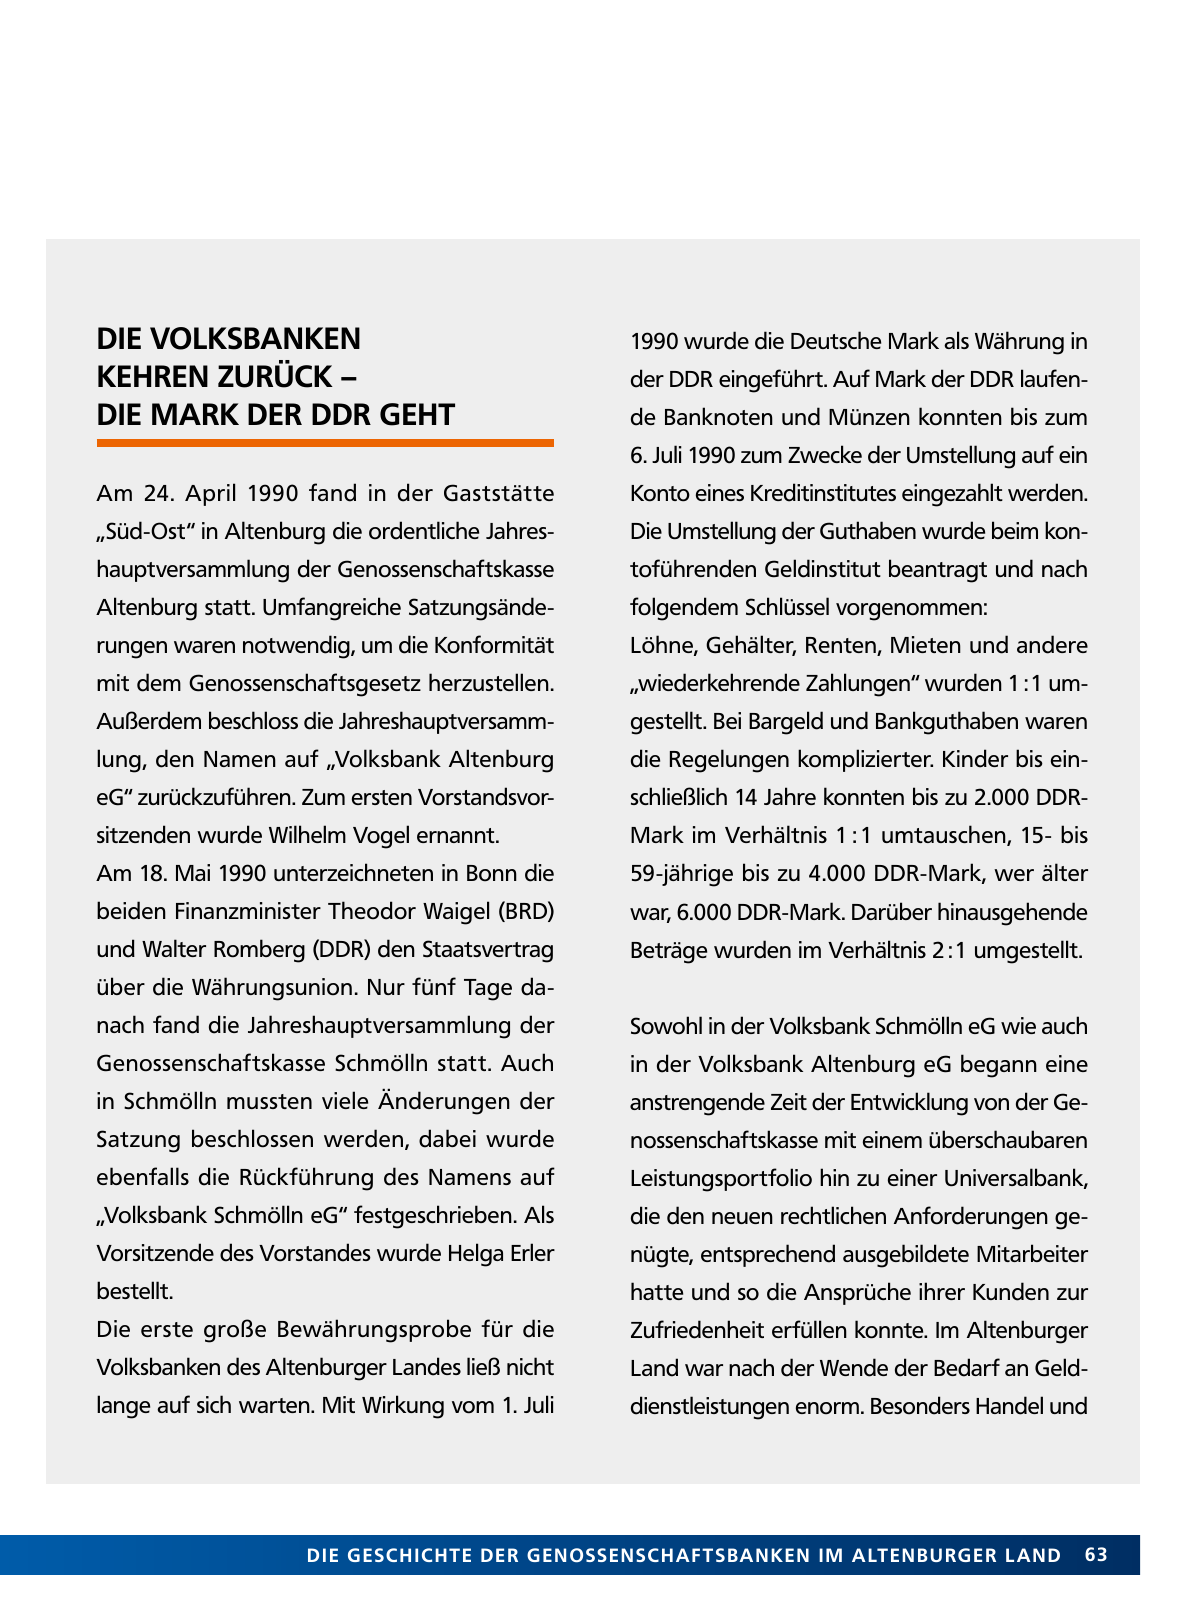 Vorschau Von der Idee, sich selbst zu helfen – 150 Jahre genossenschaftliches Bankwesen im Altenburger Land Seite 63